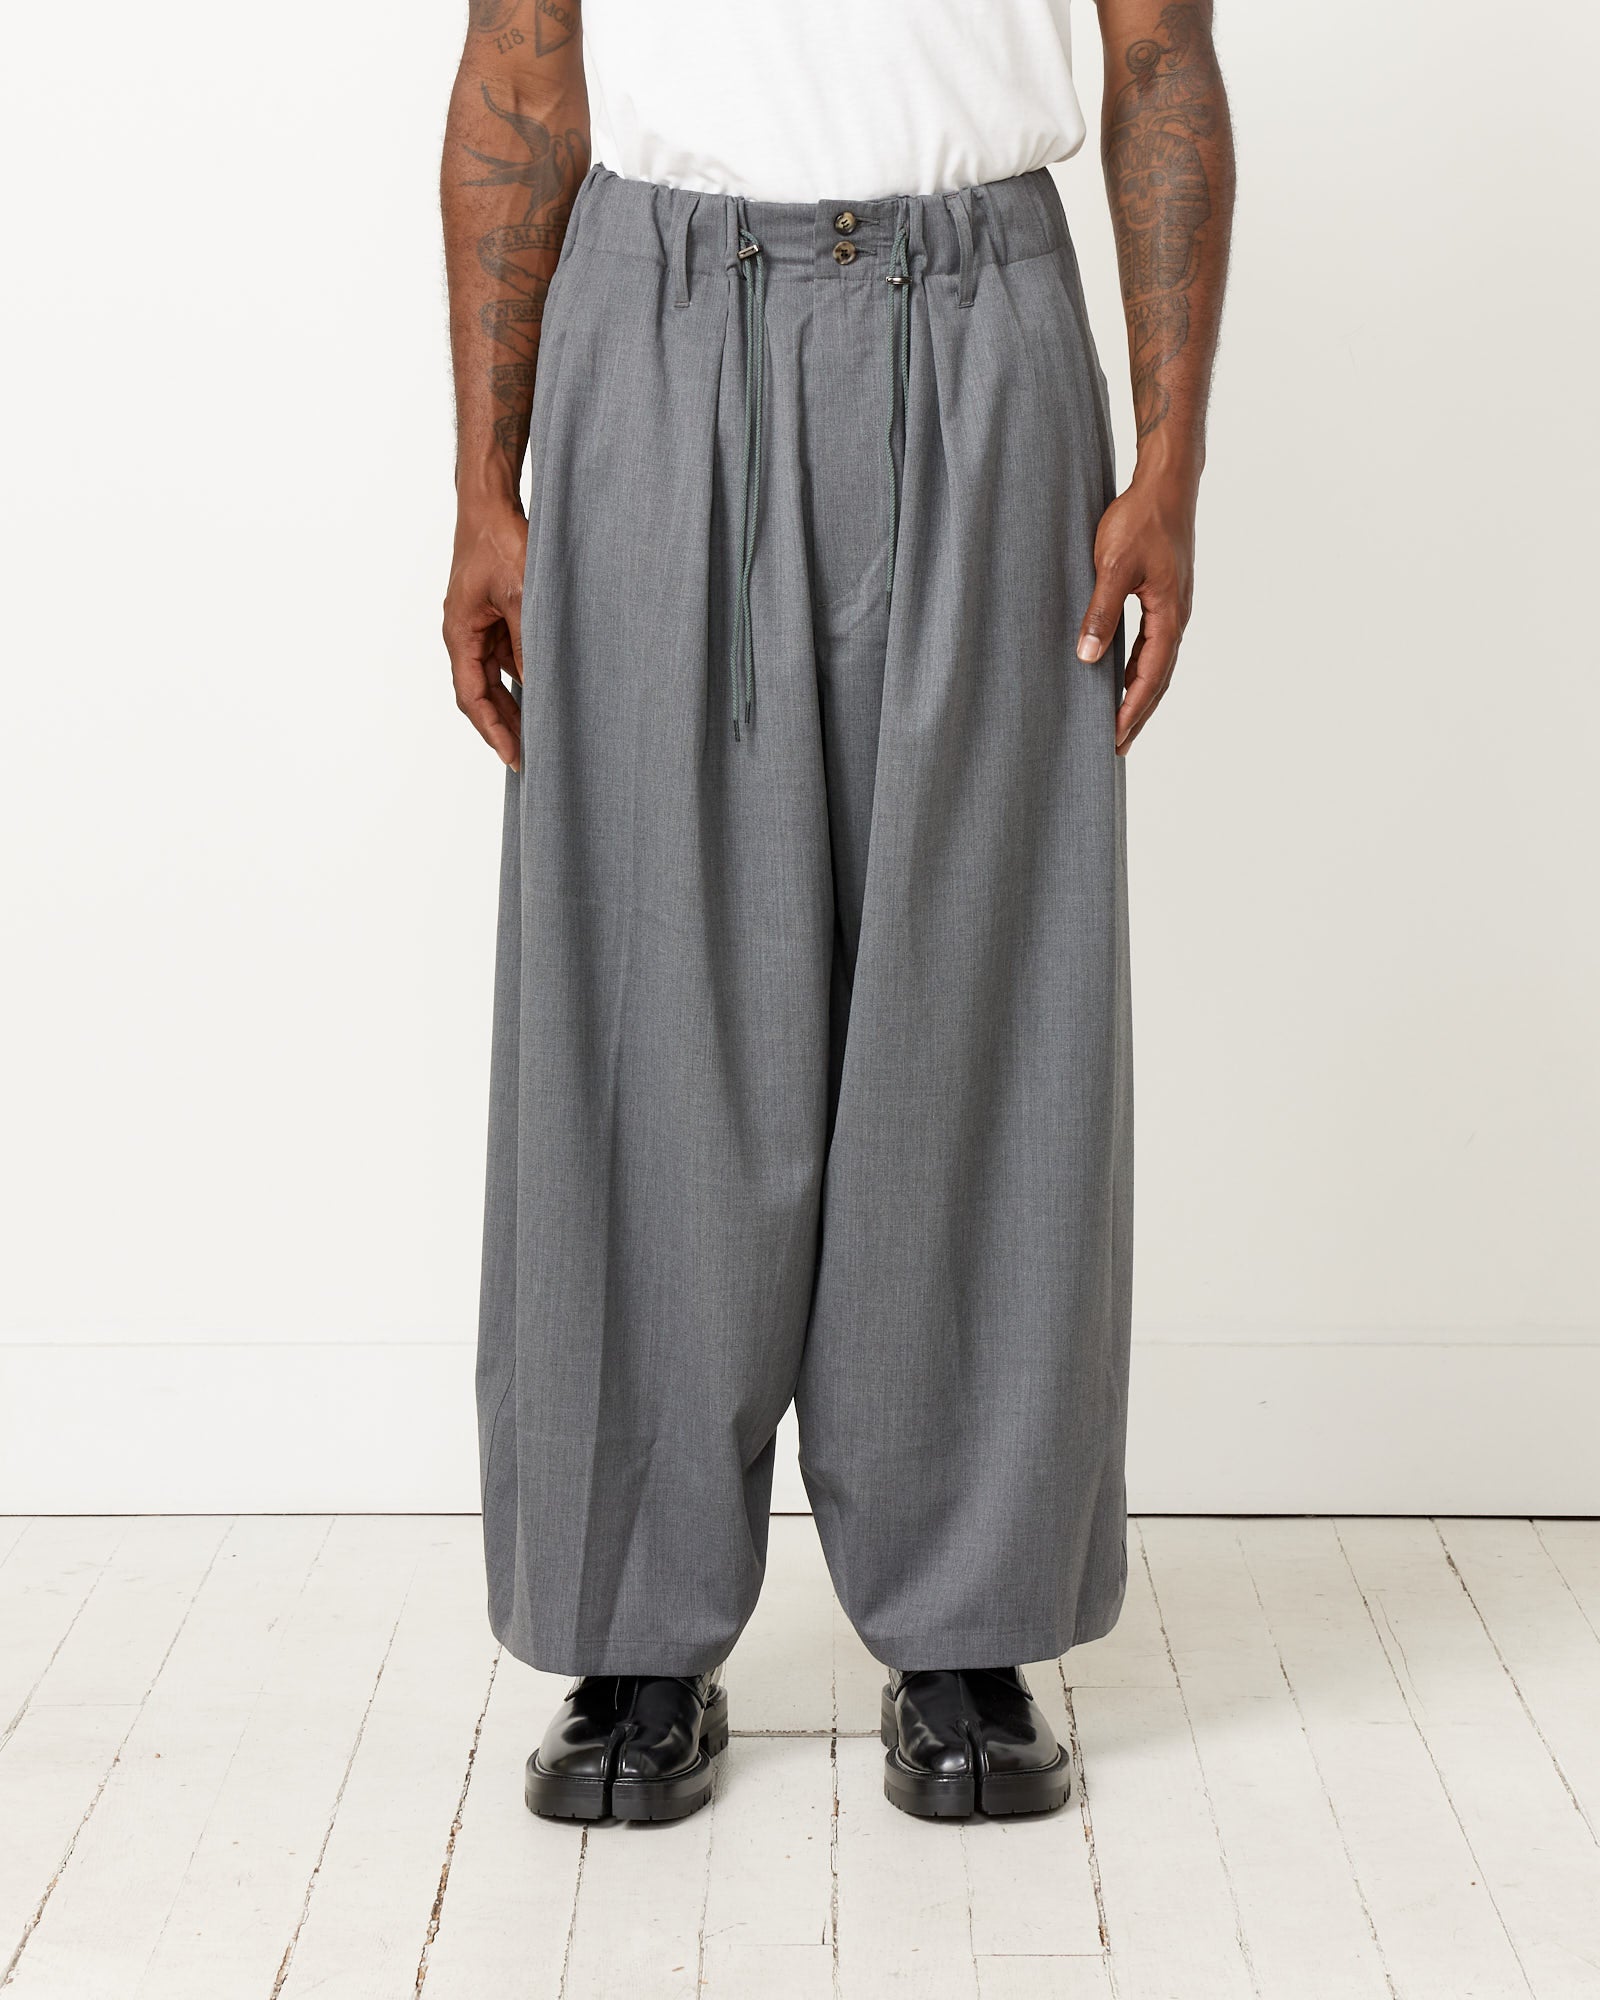 Essential Circular Pants in Light Grey – Mohawk General Store